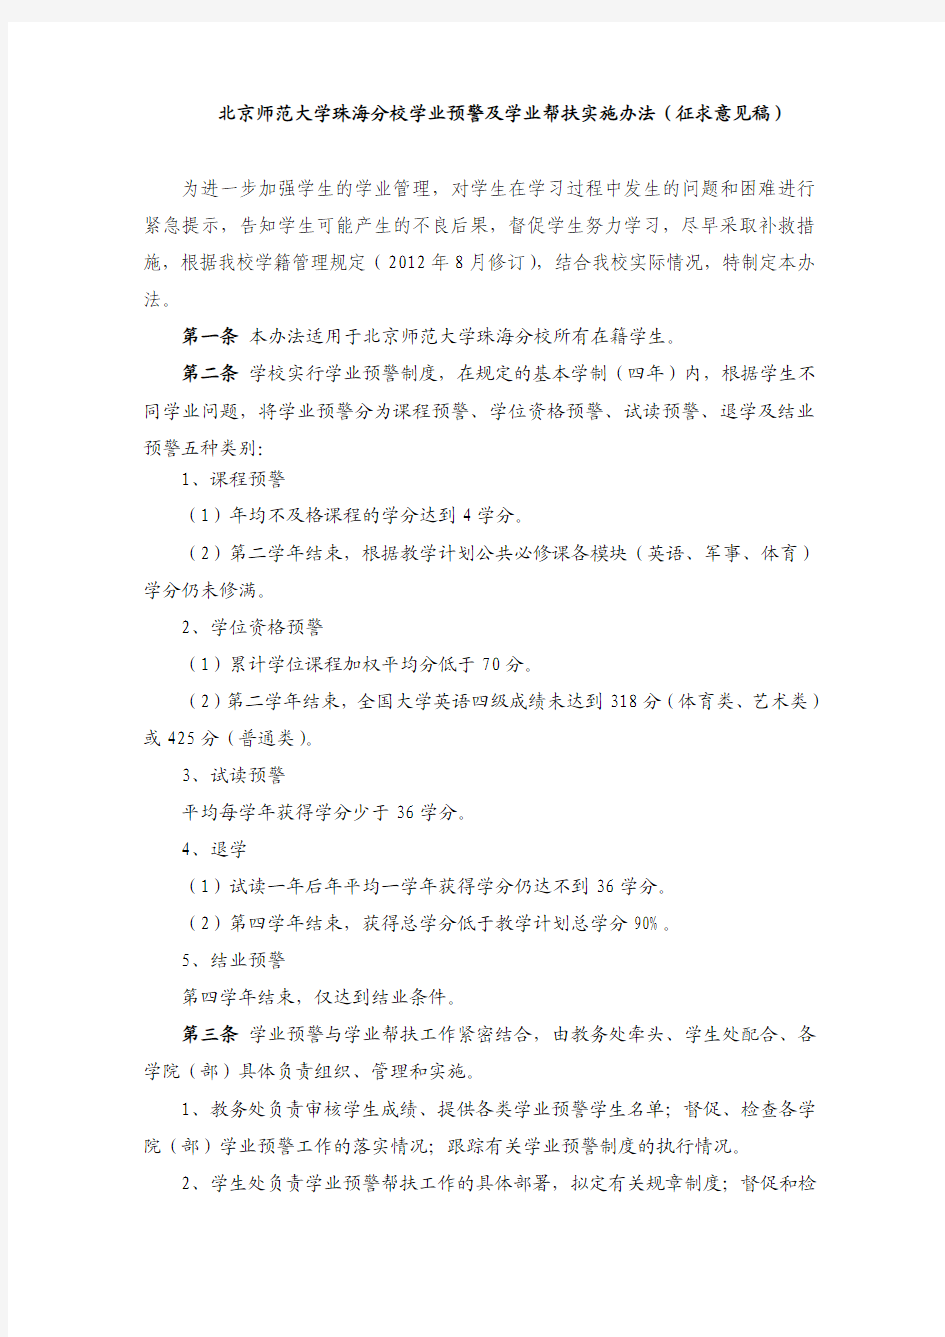 北京师范大学珠海分校学业预警实施办法(征求意见稿)20140114